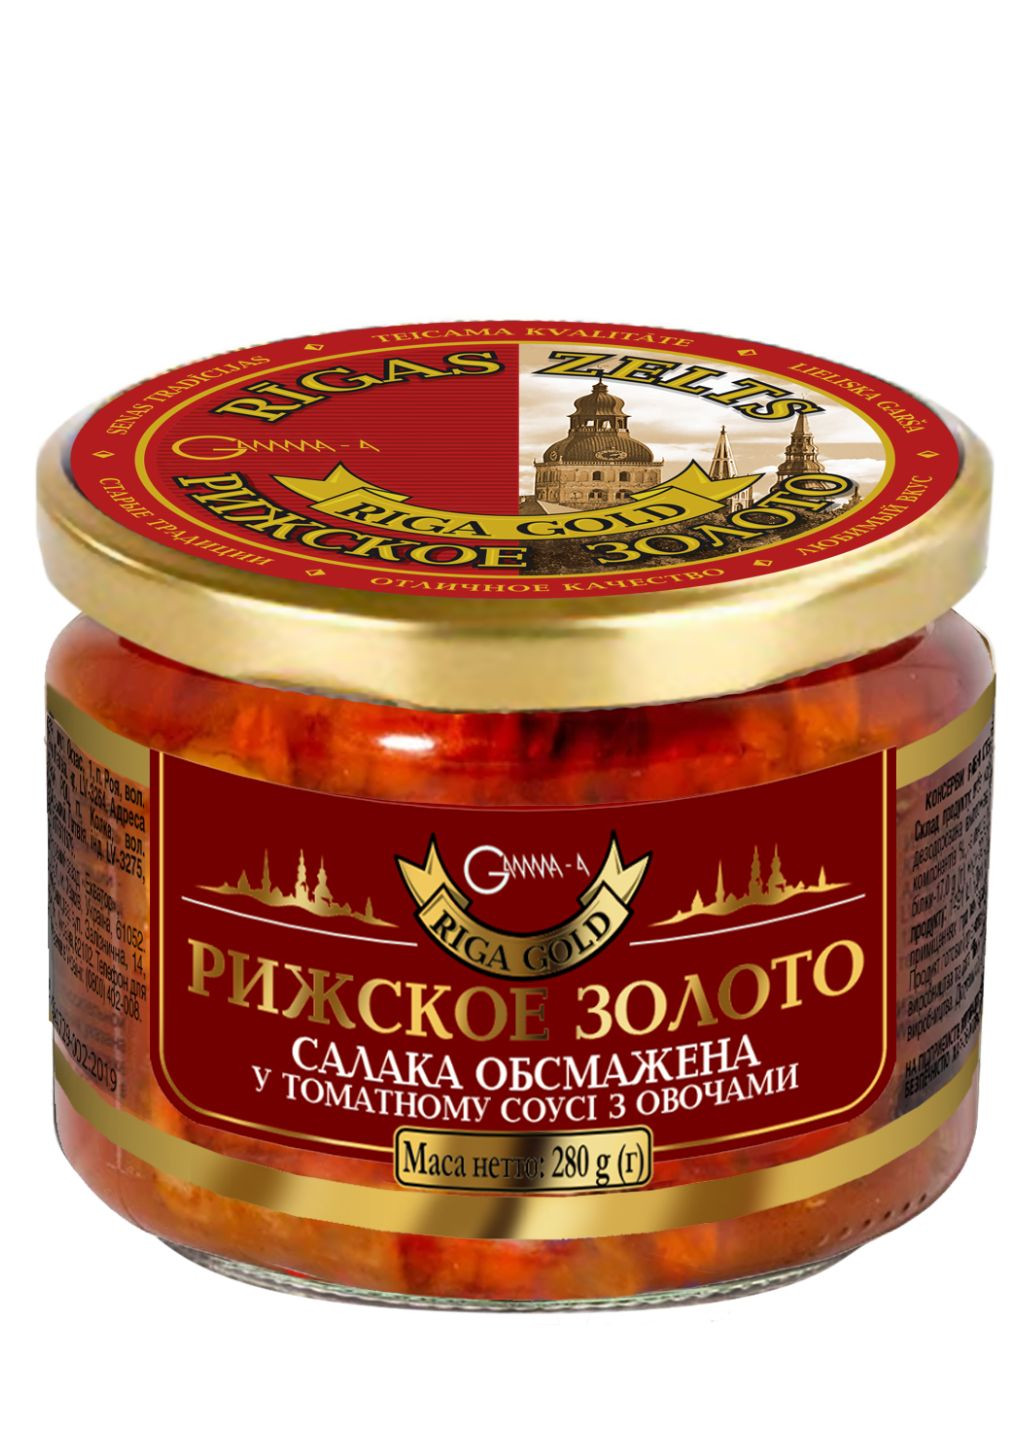 Салака обсмажена в томатному соусі з овочами Ризьке золото 280 г Ризьке Золото - (258691803)